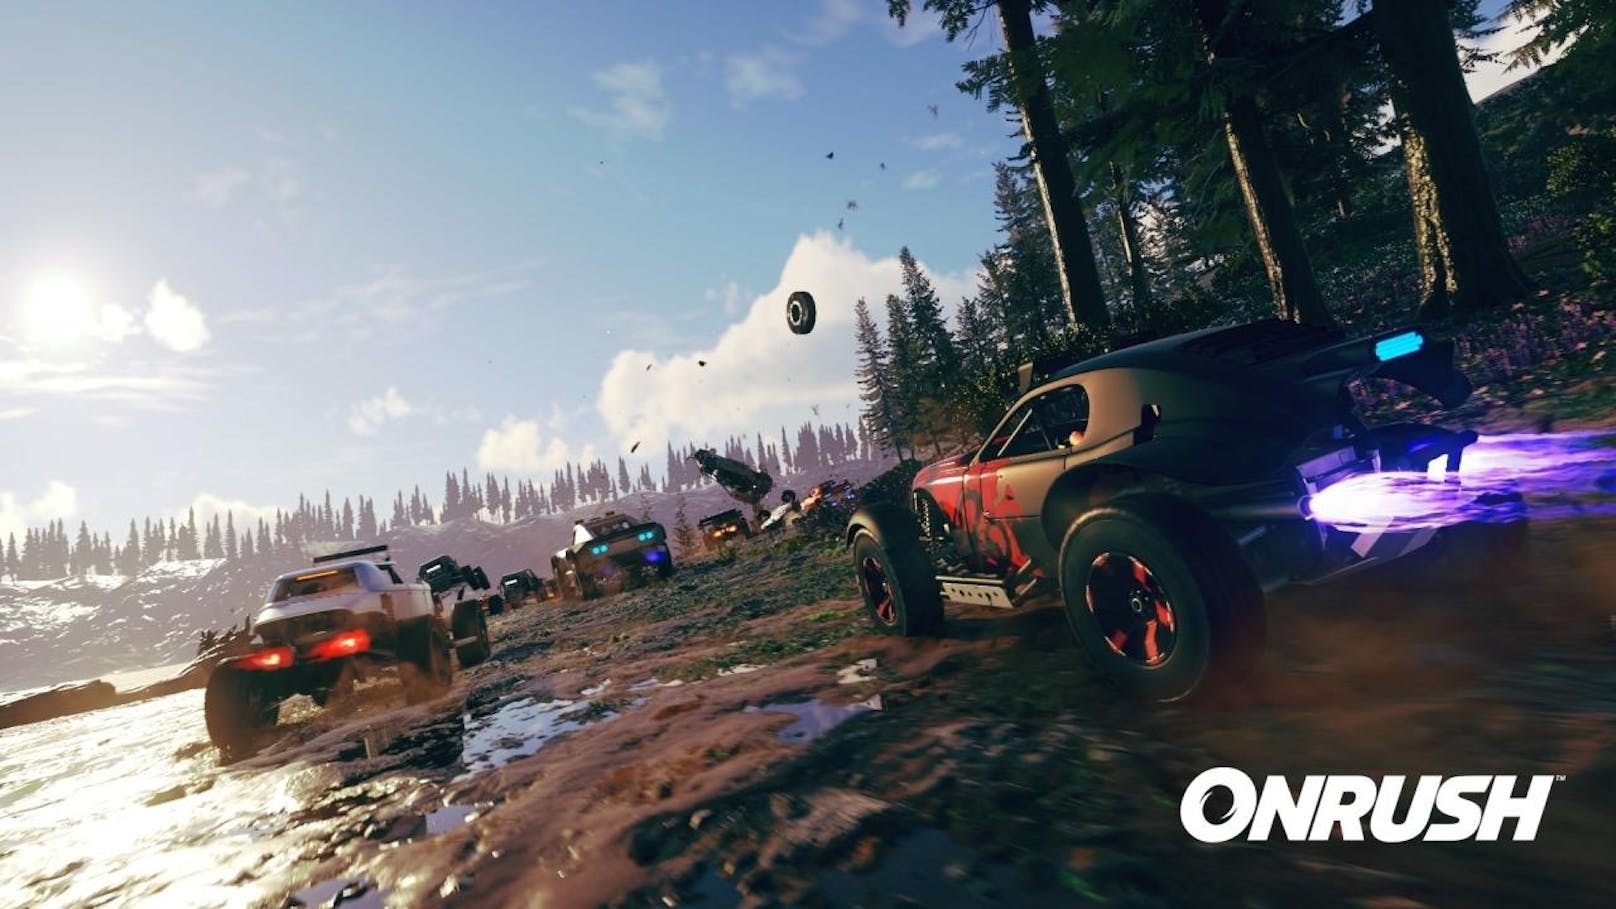 Codemasters plant einen neuen Racing-Titel: OnRush huldigt dem Geschwindigkeits-Gott. Im Game geht es einzig und allein um Style und Stunts, wenn die Fahrer im Geschwindigkeitsrausch beeindruckende Take-Downs vollführen, um die notwendige Power für ihre Rush-Anzeige zusammen zu bekommen. Die Veröffentlichung von OnRush für PlayStation 4 und Xbox One ist für den 5. Juni 2018 geplant.